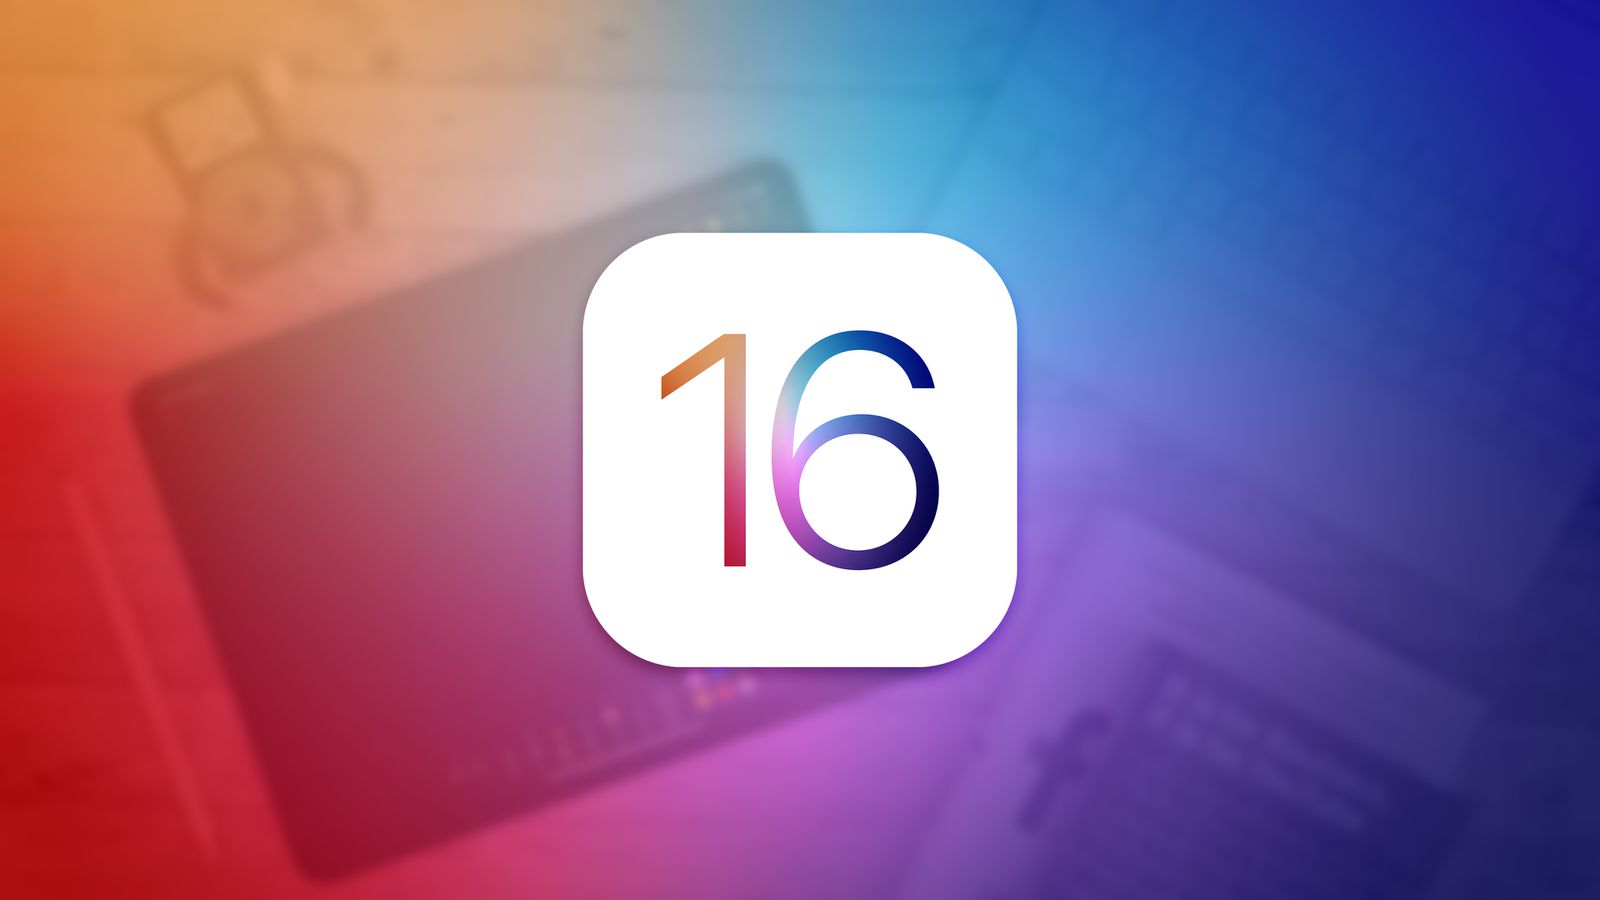 ویژگی های اصلی iOS 16